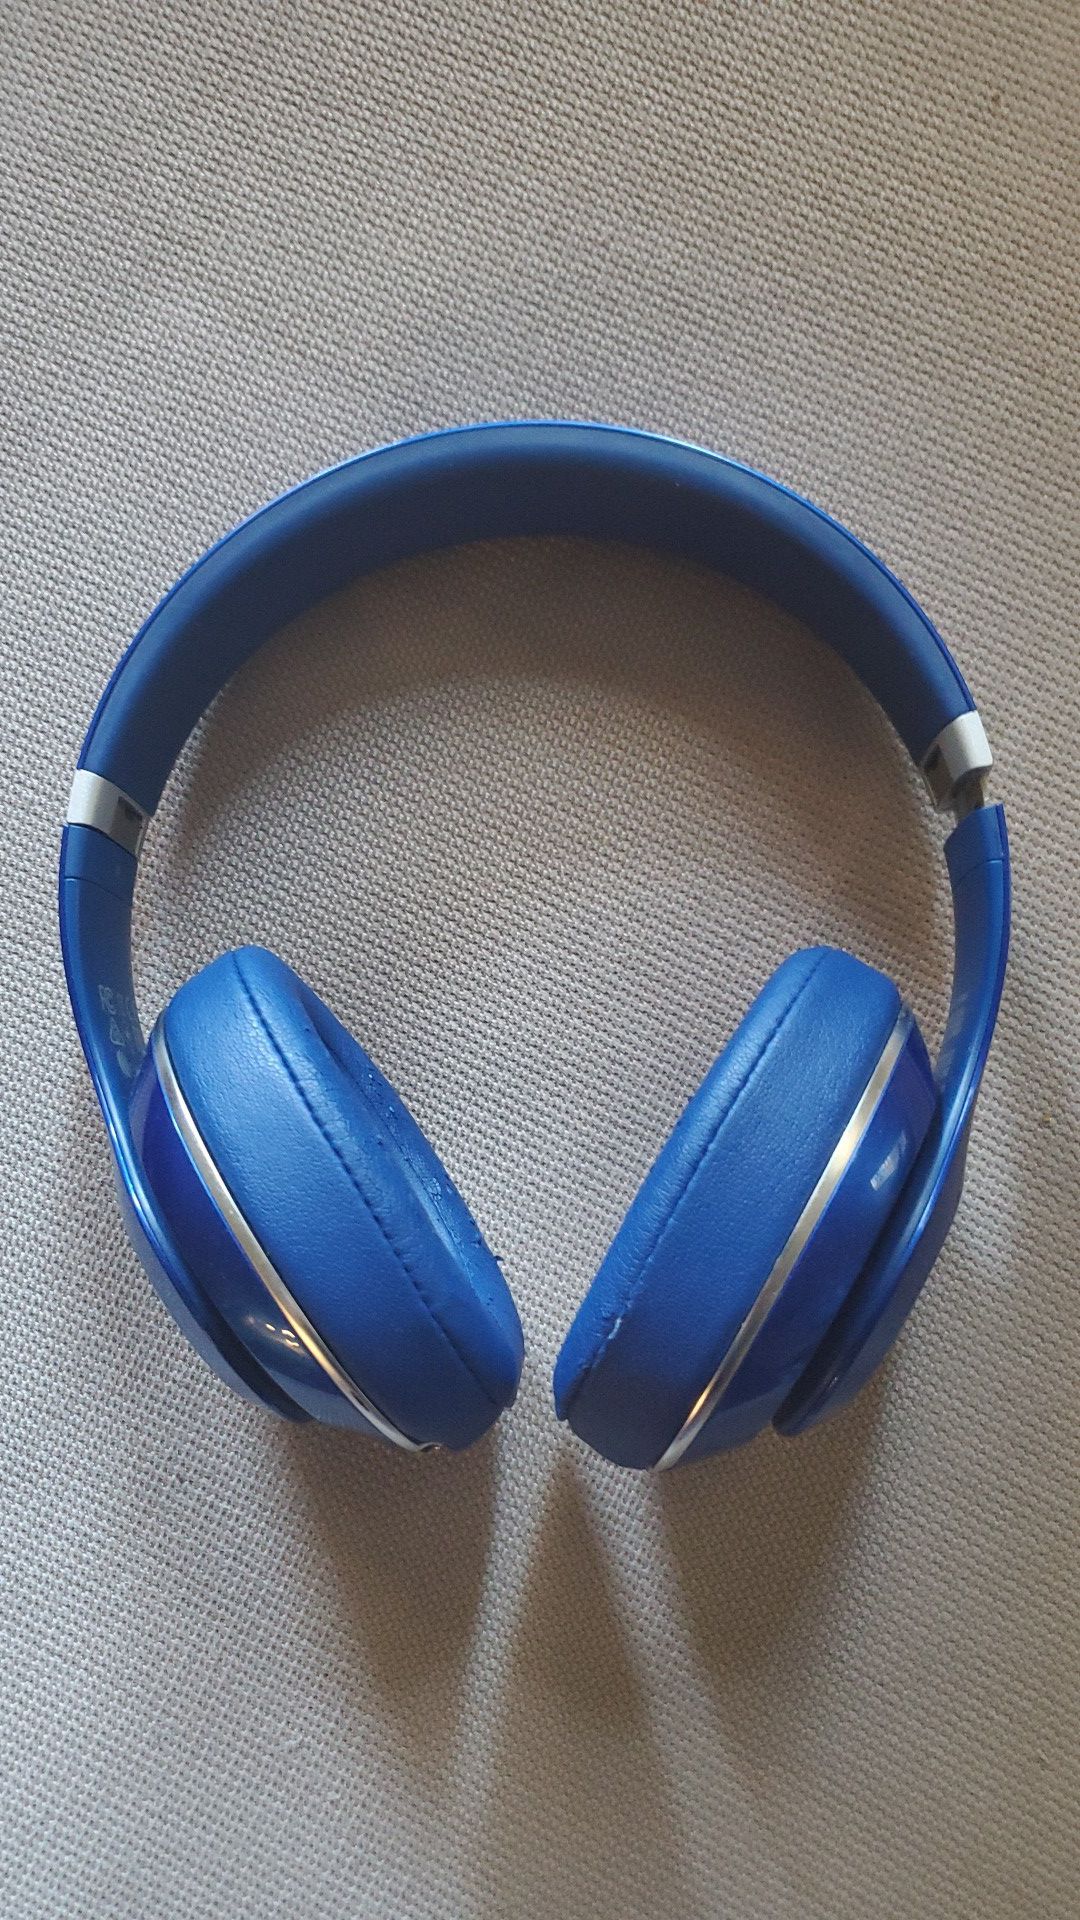 Wireless beats by dre headphones (blue)